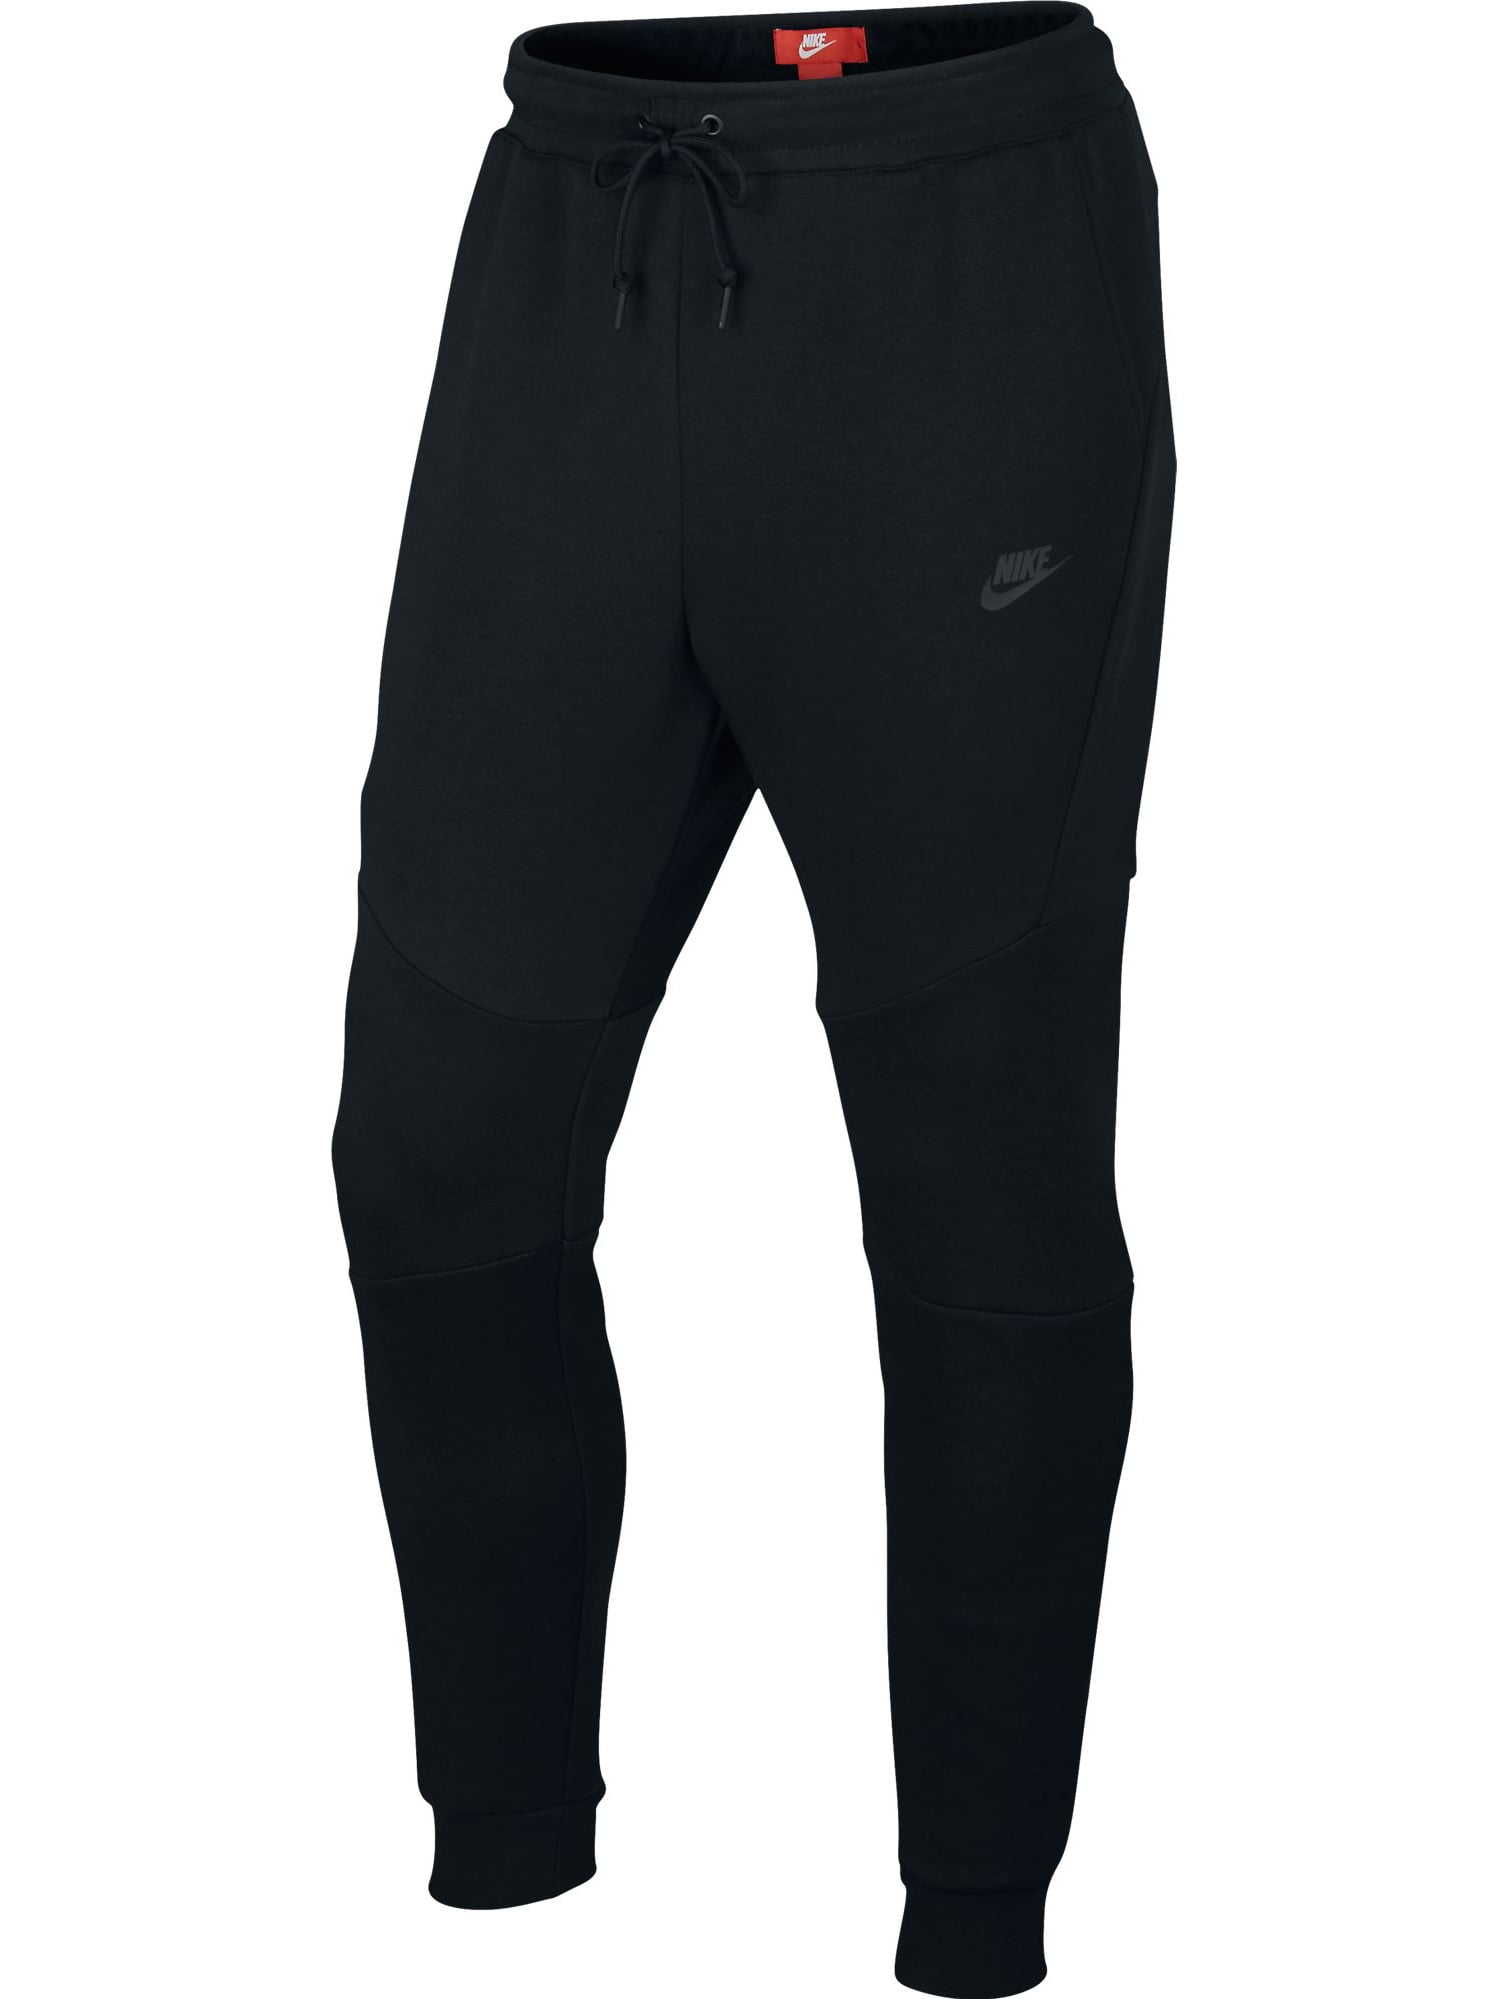 Nike Sportswear Tech Fleece Joggers Black 805162-010 - Walmart.com